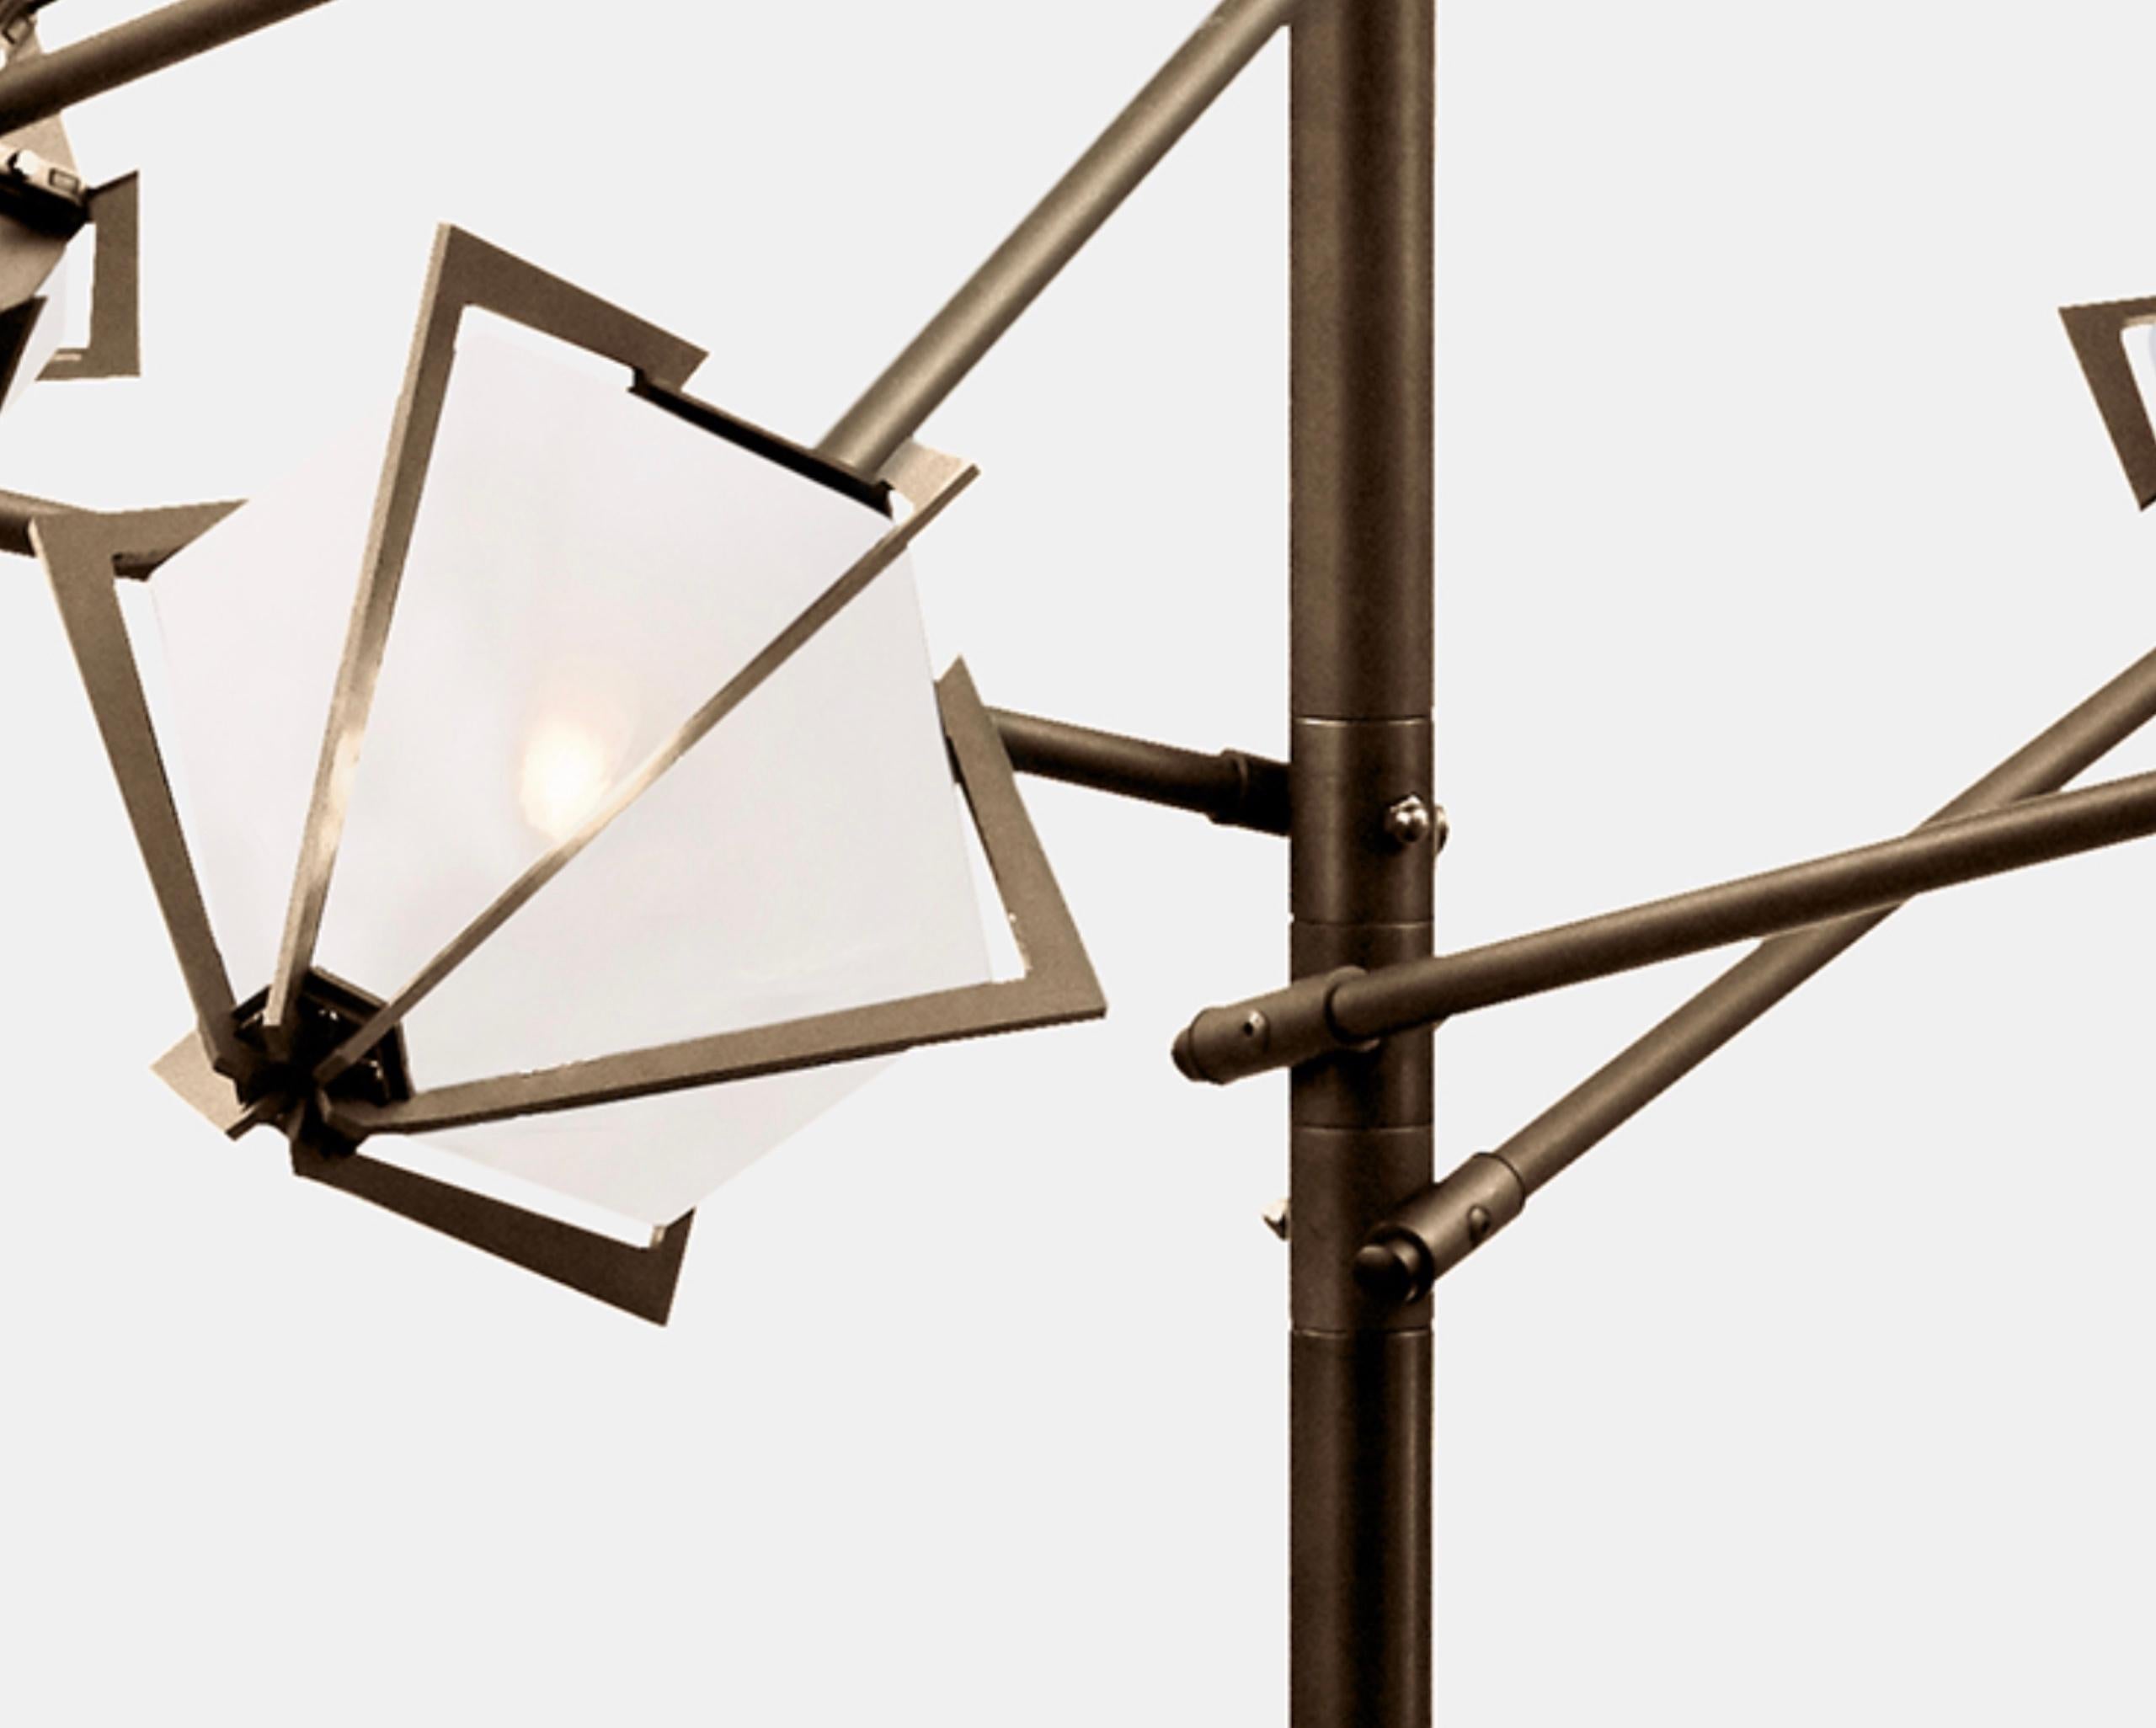 Der Harlow Spoke Chandelier Small bietet einen eleganten Sternenhimmel, der durch seinen Schirm aus mundgeblasenem Glas reflektiert und gebrochen wird. Der Harlow Spoke Chandelier Small ist ein funkelndes Prisma, das direkt von der Welt des Schmucks